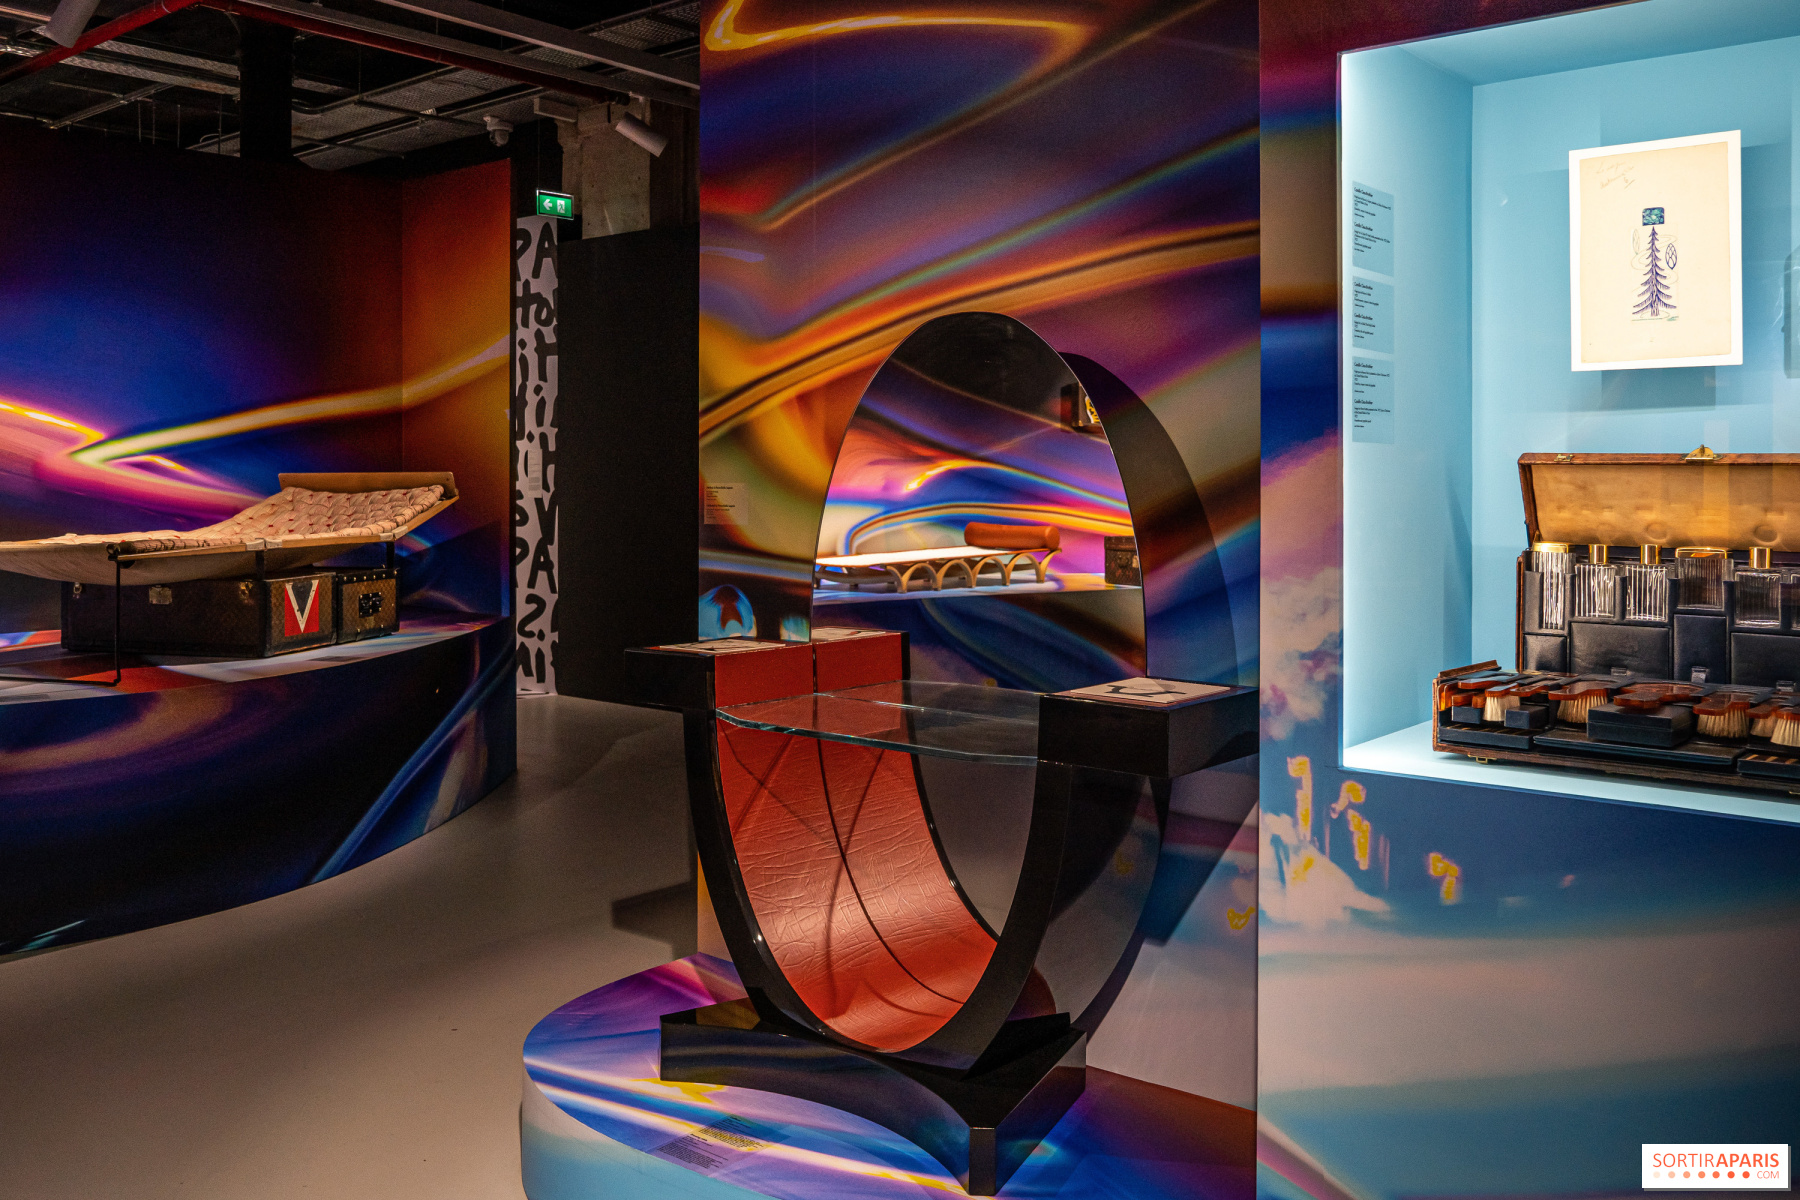 Louis Vuitton Opens New Exhibition Space and Café at Paris